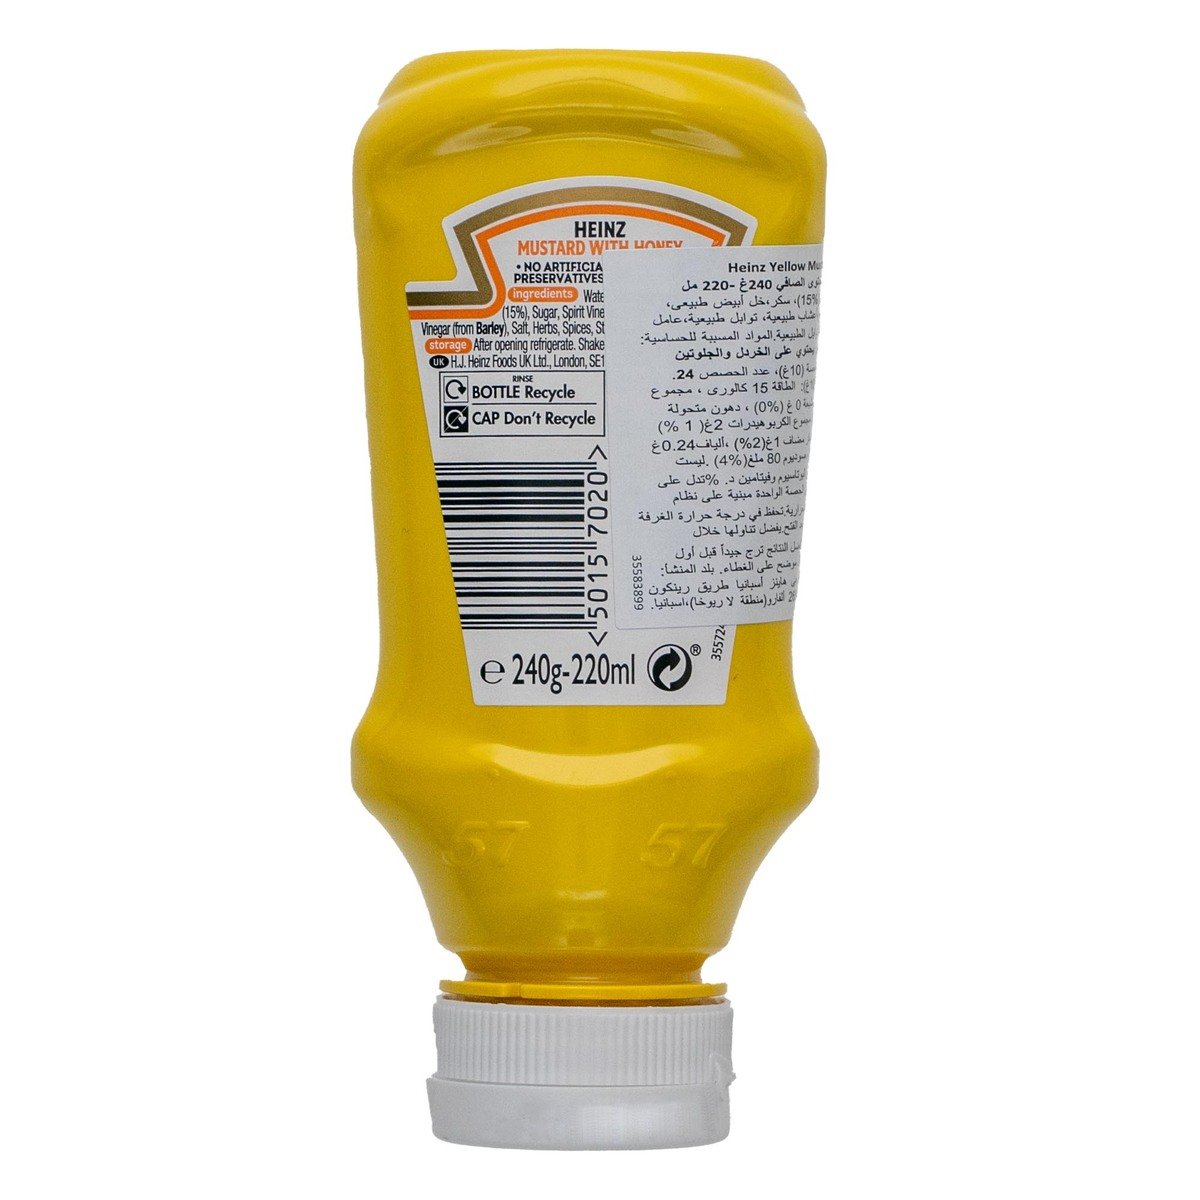 Heinz Yellow Mustard Honey 220 ml